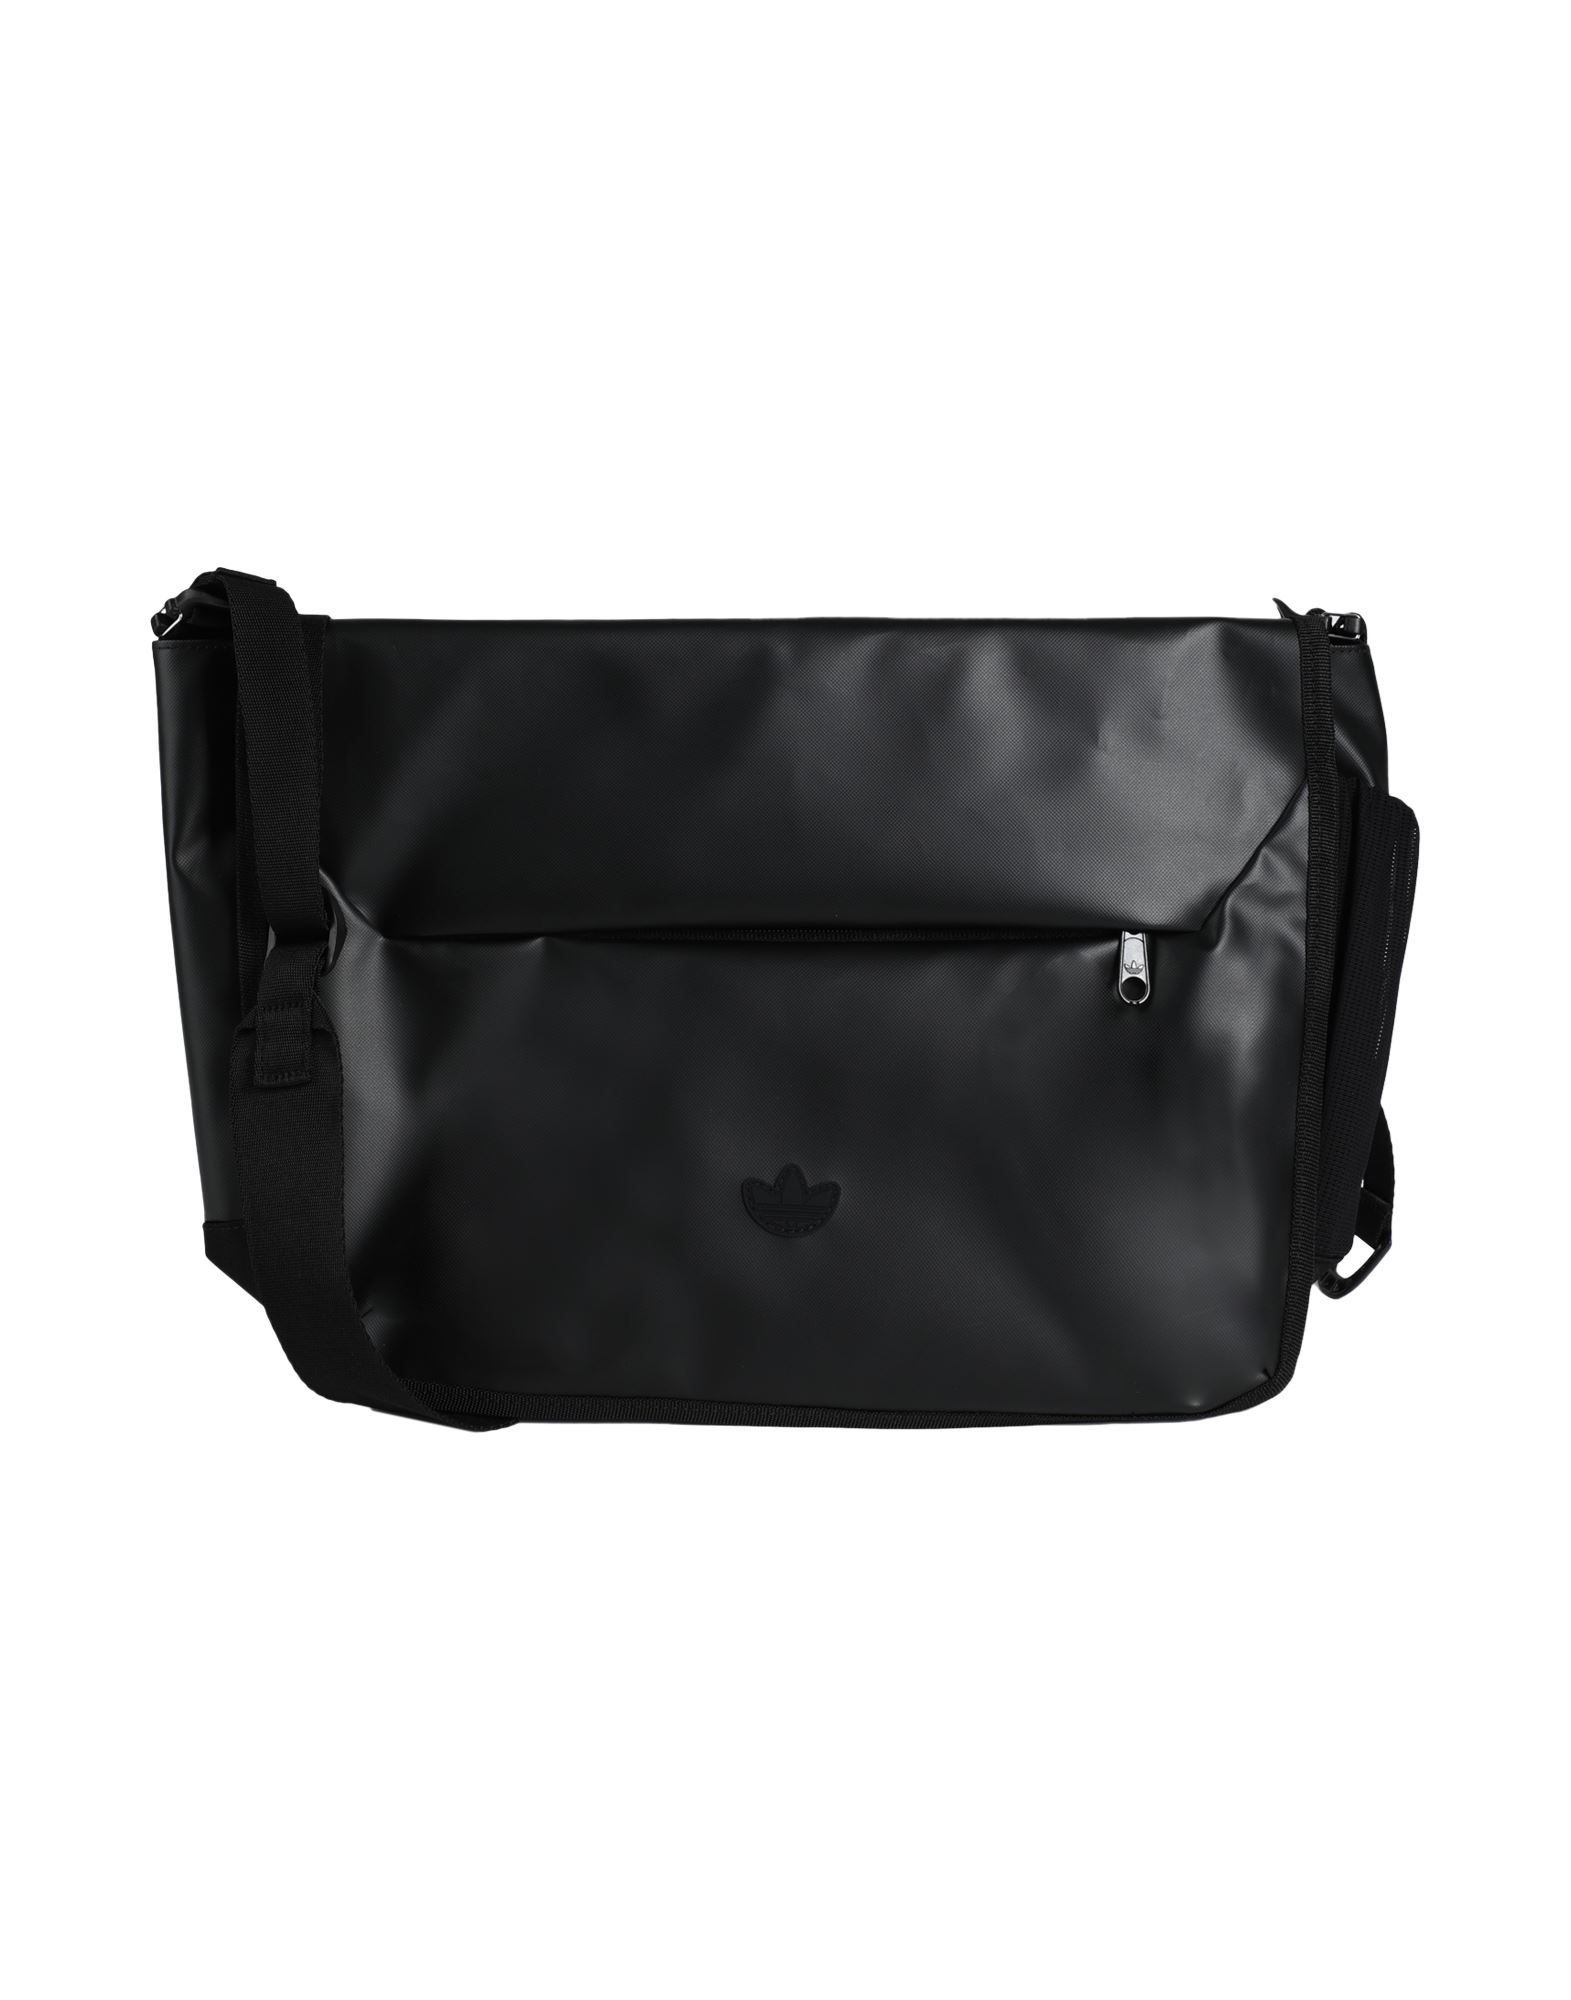 Adidas Originals Handbags In Black